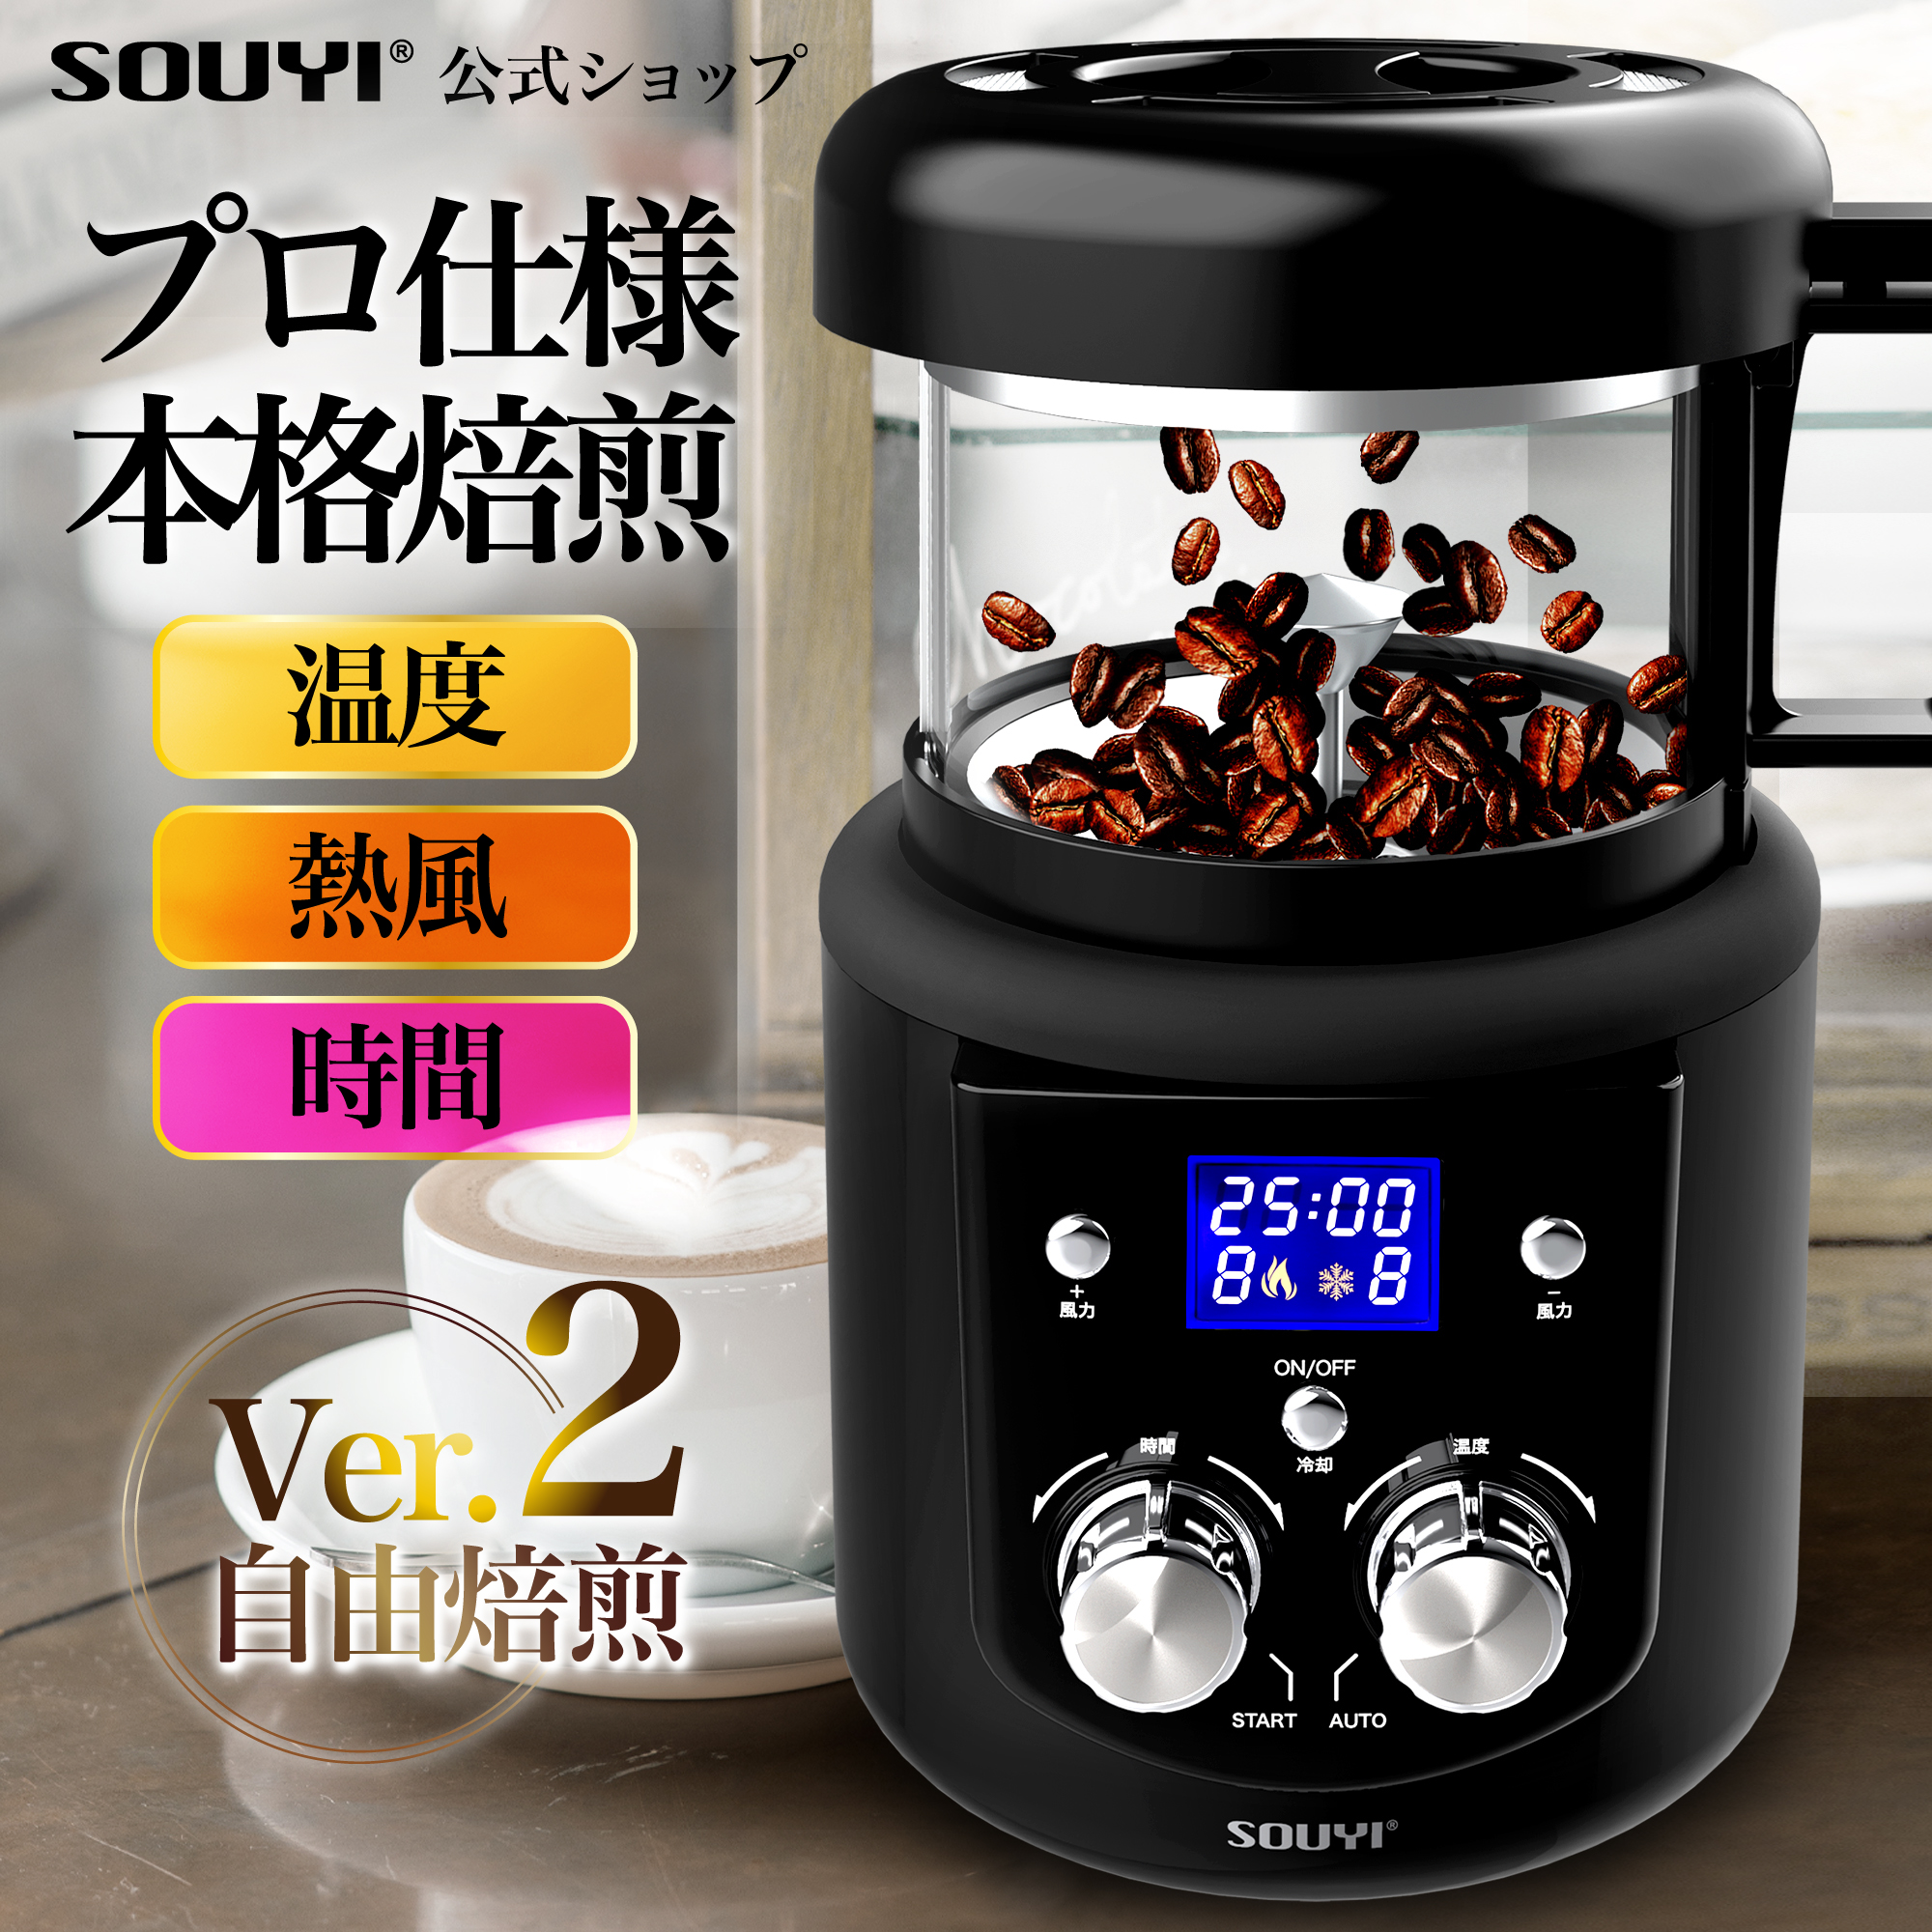 【全国一律送料無料】コンパクトサイズなのに本格的！ 熱風式を採用、プロ仕様の本格焙煎機で苦味、酸味、香りなど、多彩な組み合わせの美味しいコーヒーをご自宅でもお楽しみください。 コーヒー焙煎機 SY-121N ソウイ SOUYI アウトドア 美味しい アイス コーヒー コーヒー豆 粉 水出し 中煎り 深煎り オリジナル 自宅焙煎 焙煎器 焙煎機 珈琲 モカ 飲み比べ ブラック コーヒーメーカー コーヒーマシン おしゃれ 送料無料